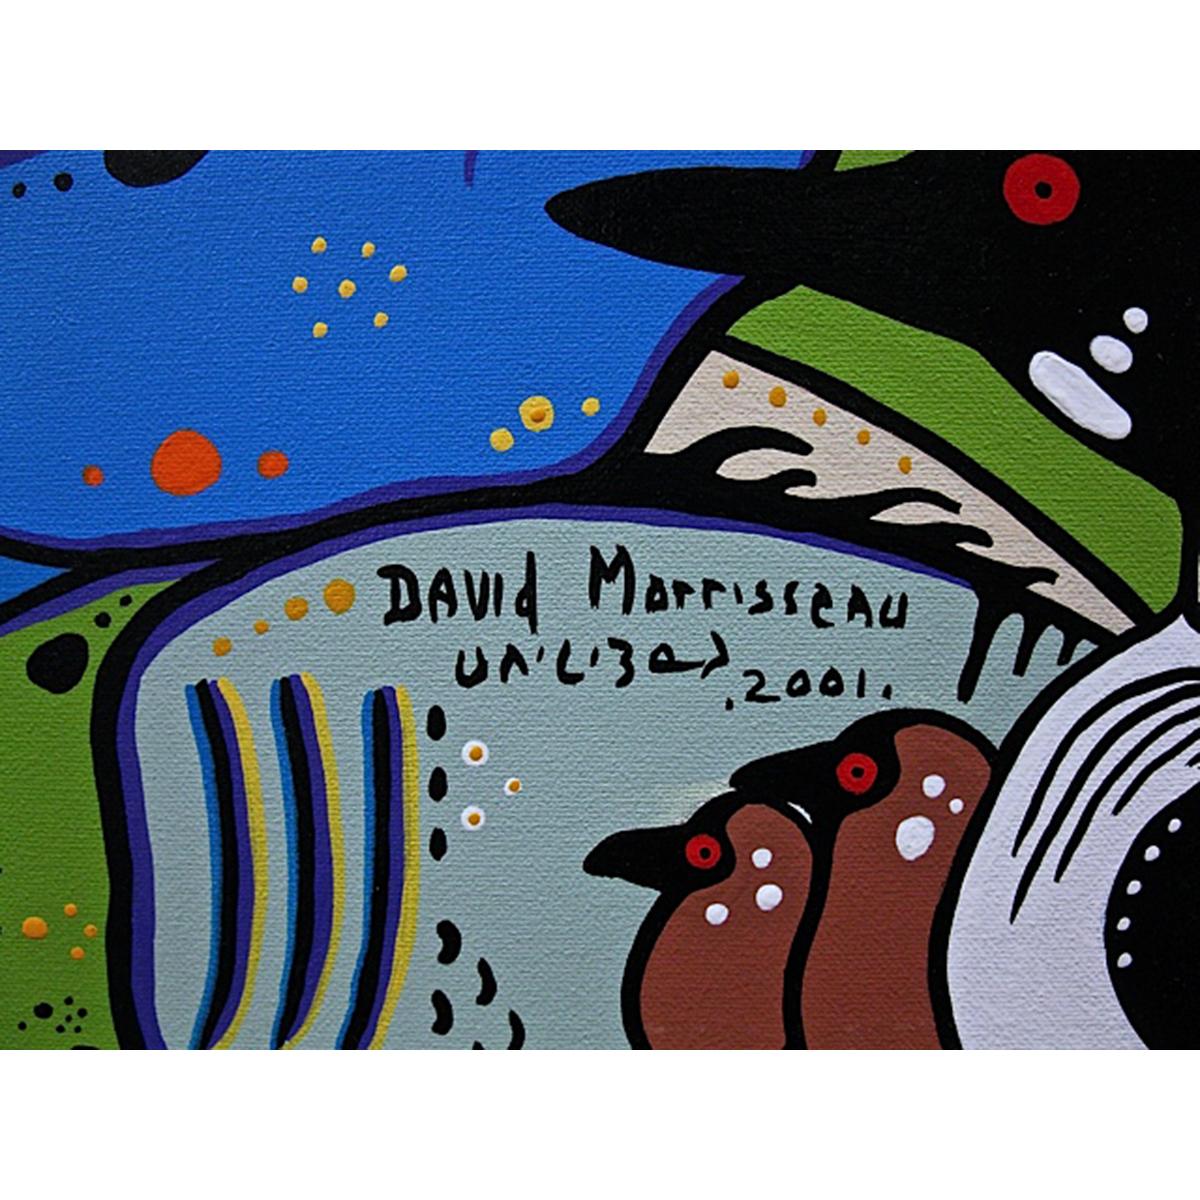 DAVID MORRISSEAU (NATIVE CANADIAN, 1961-)